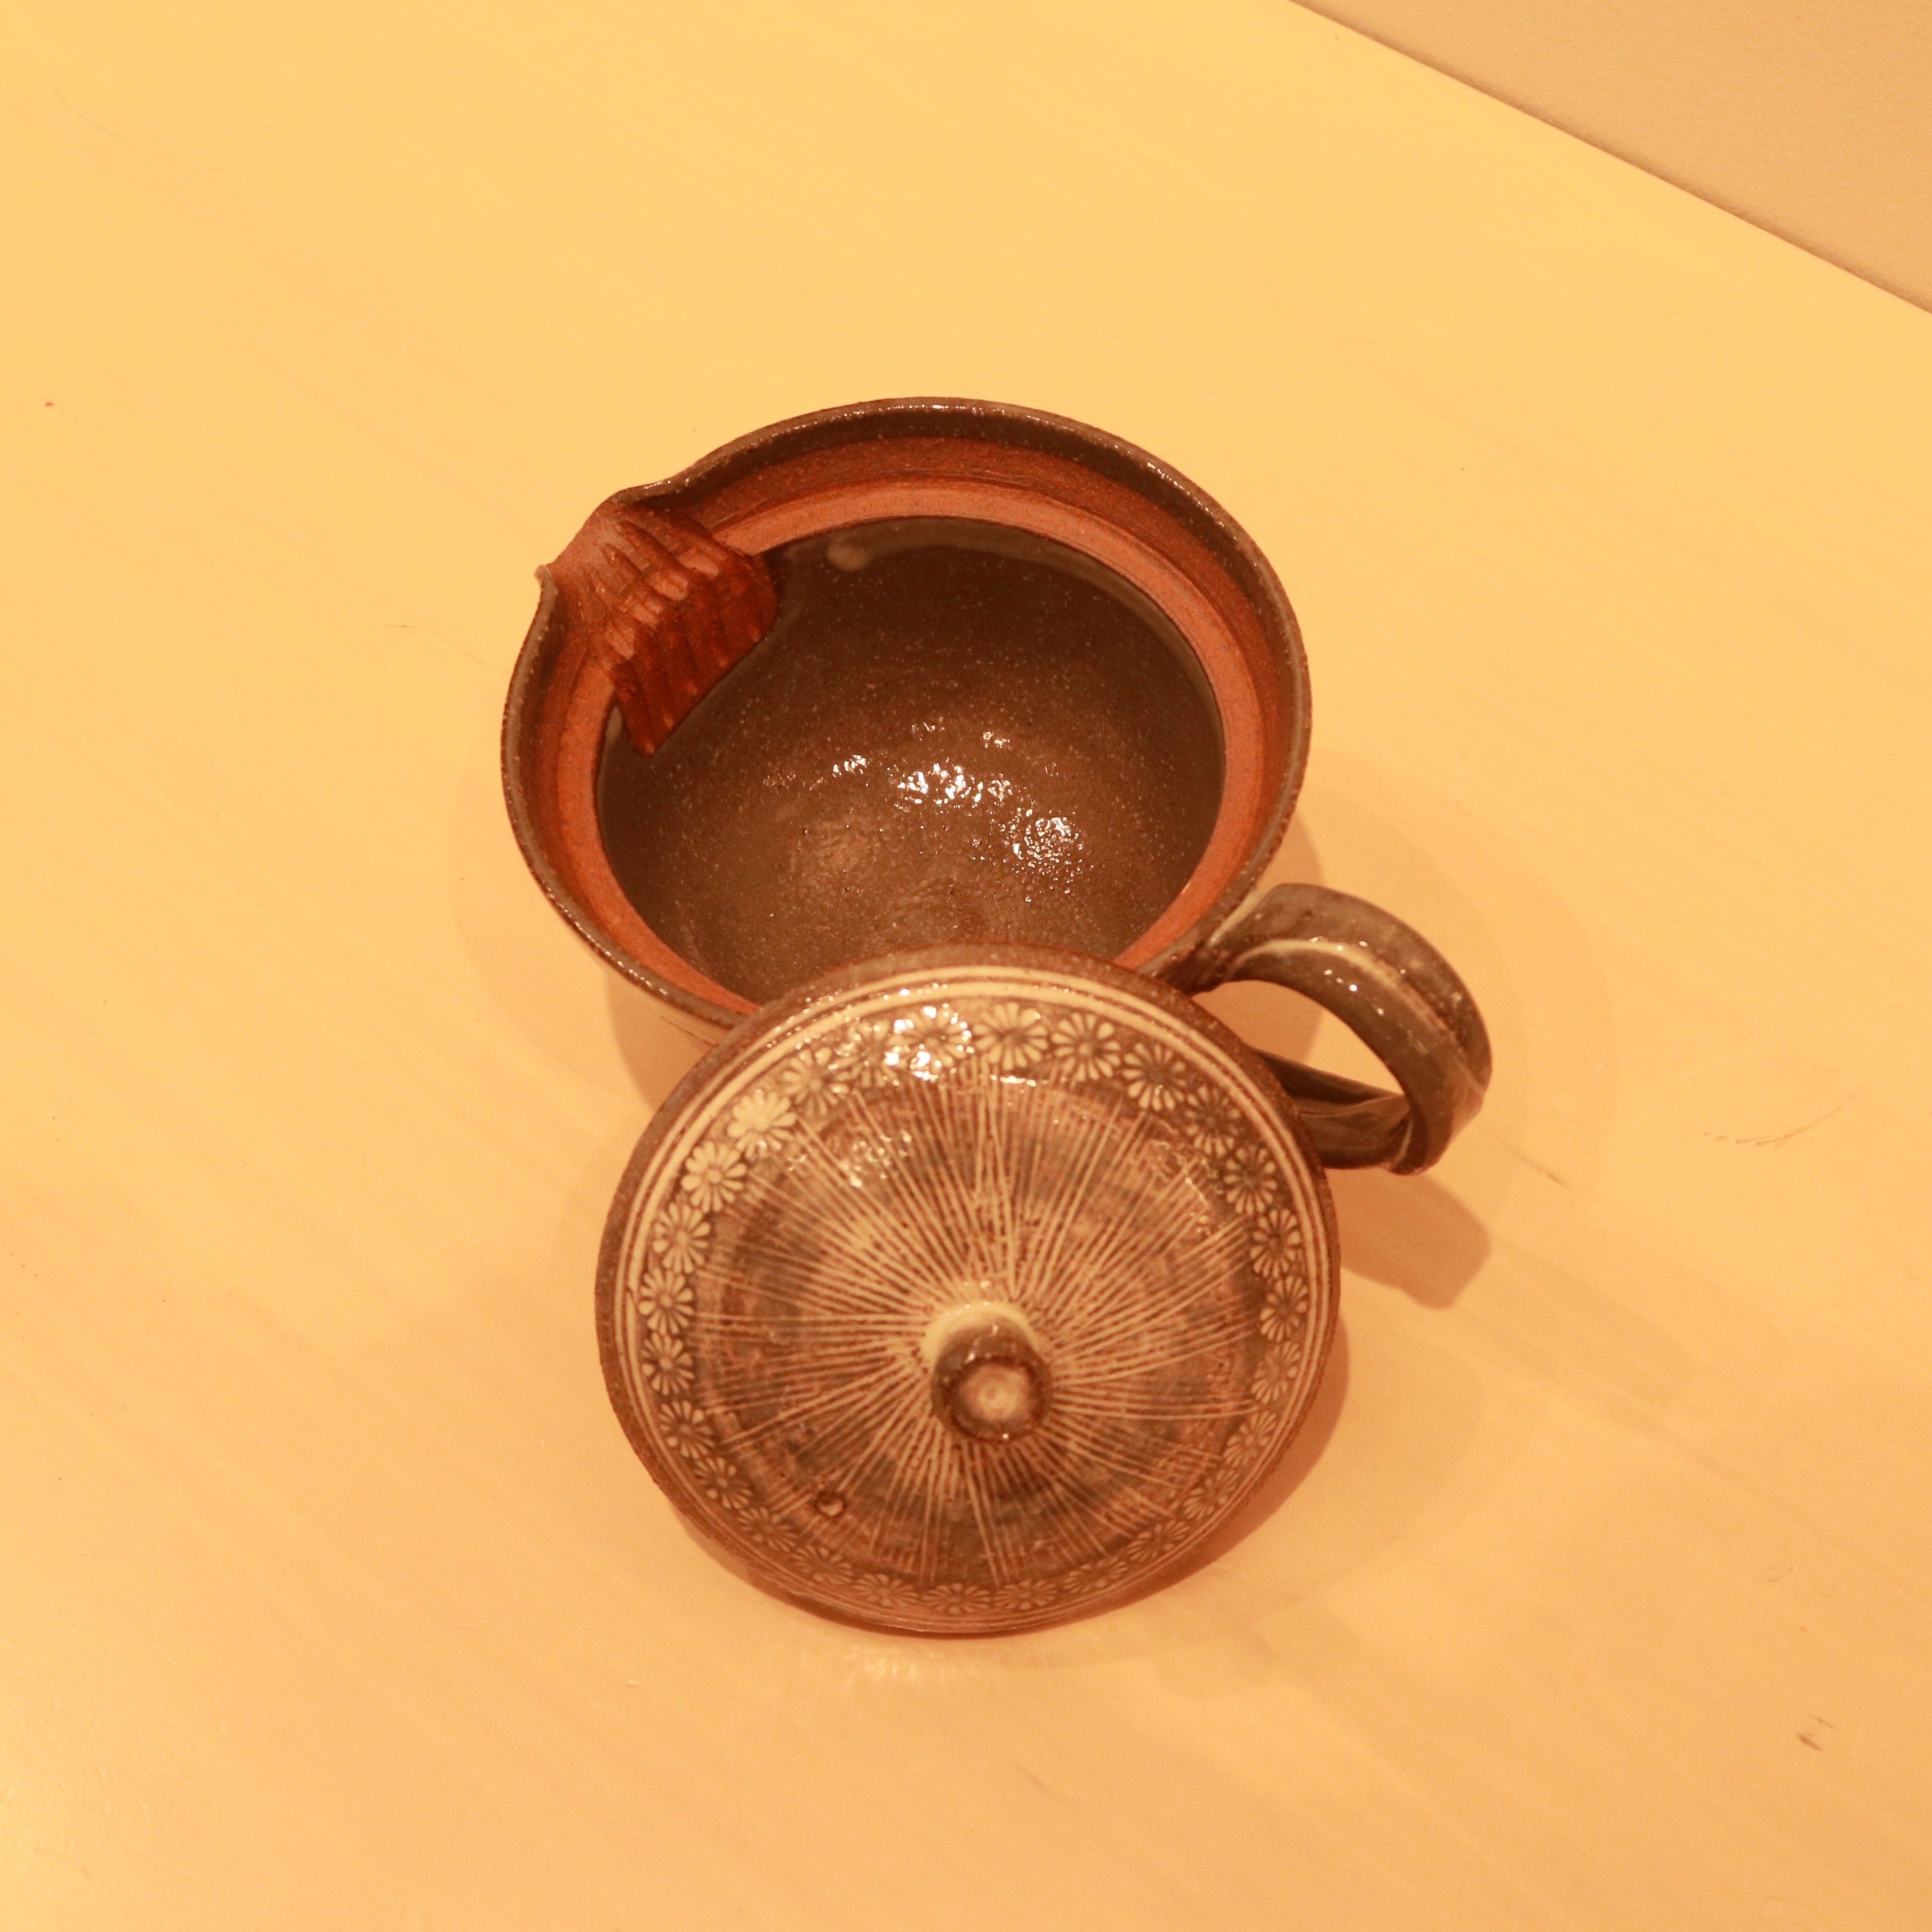 HARIO & たち吉　茶茶急須　清水焼  / Ceramic Tea pot collaborated with Tachikichi